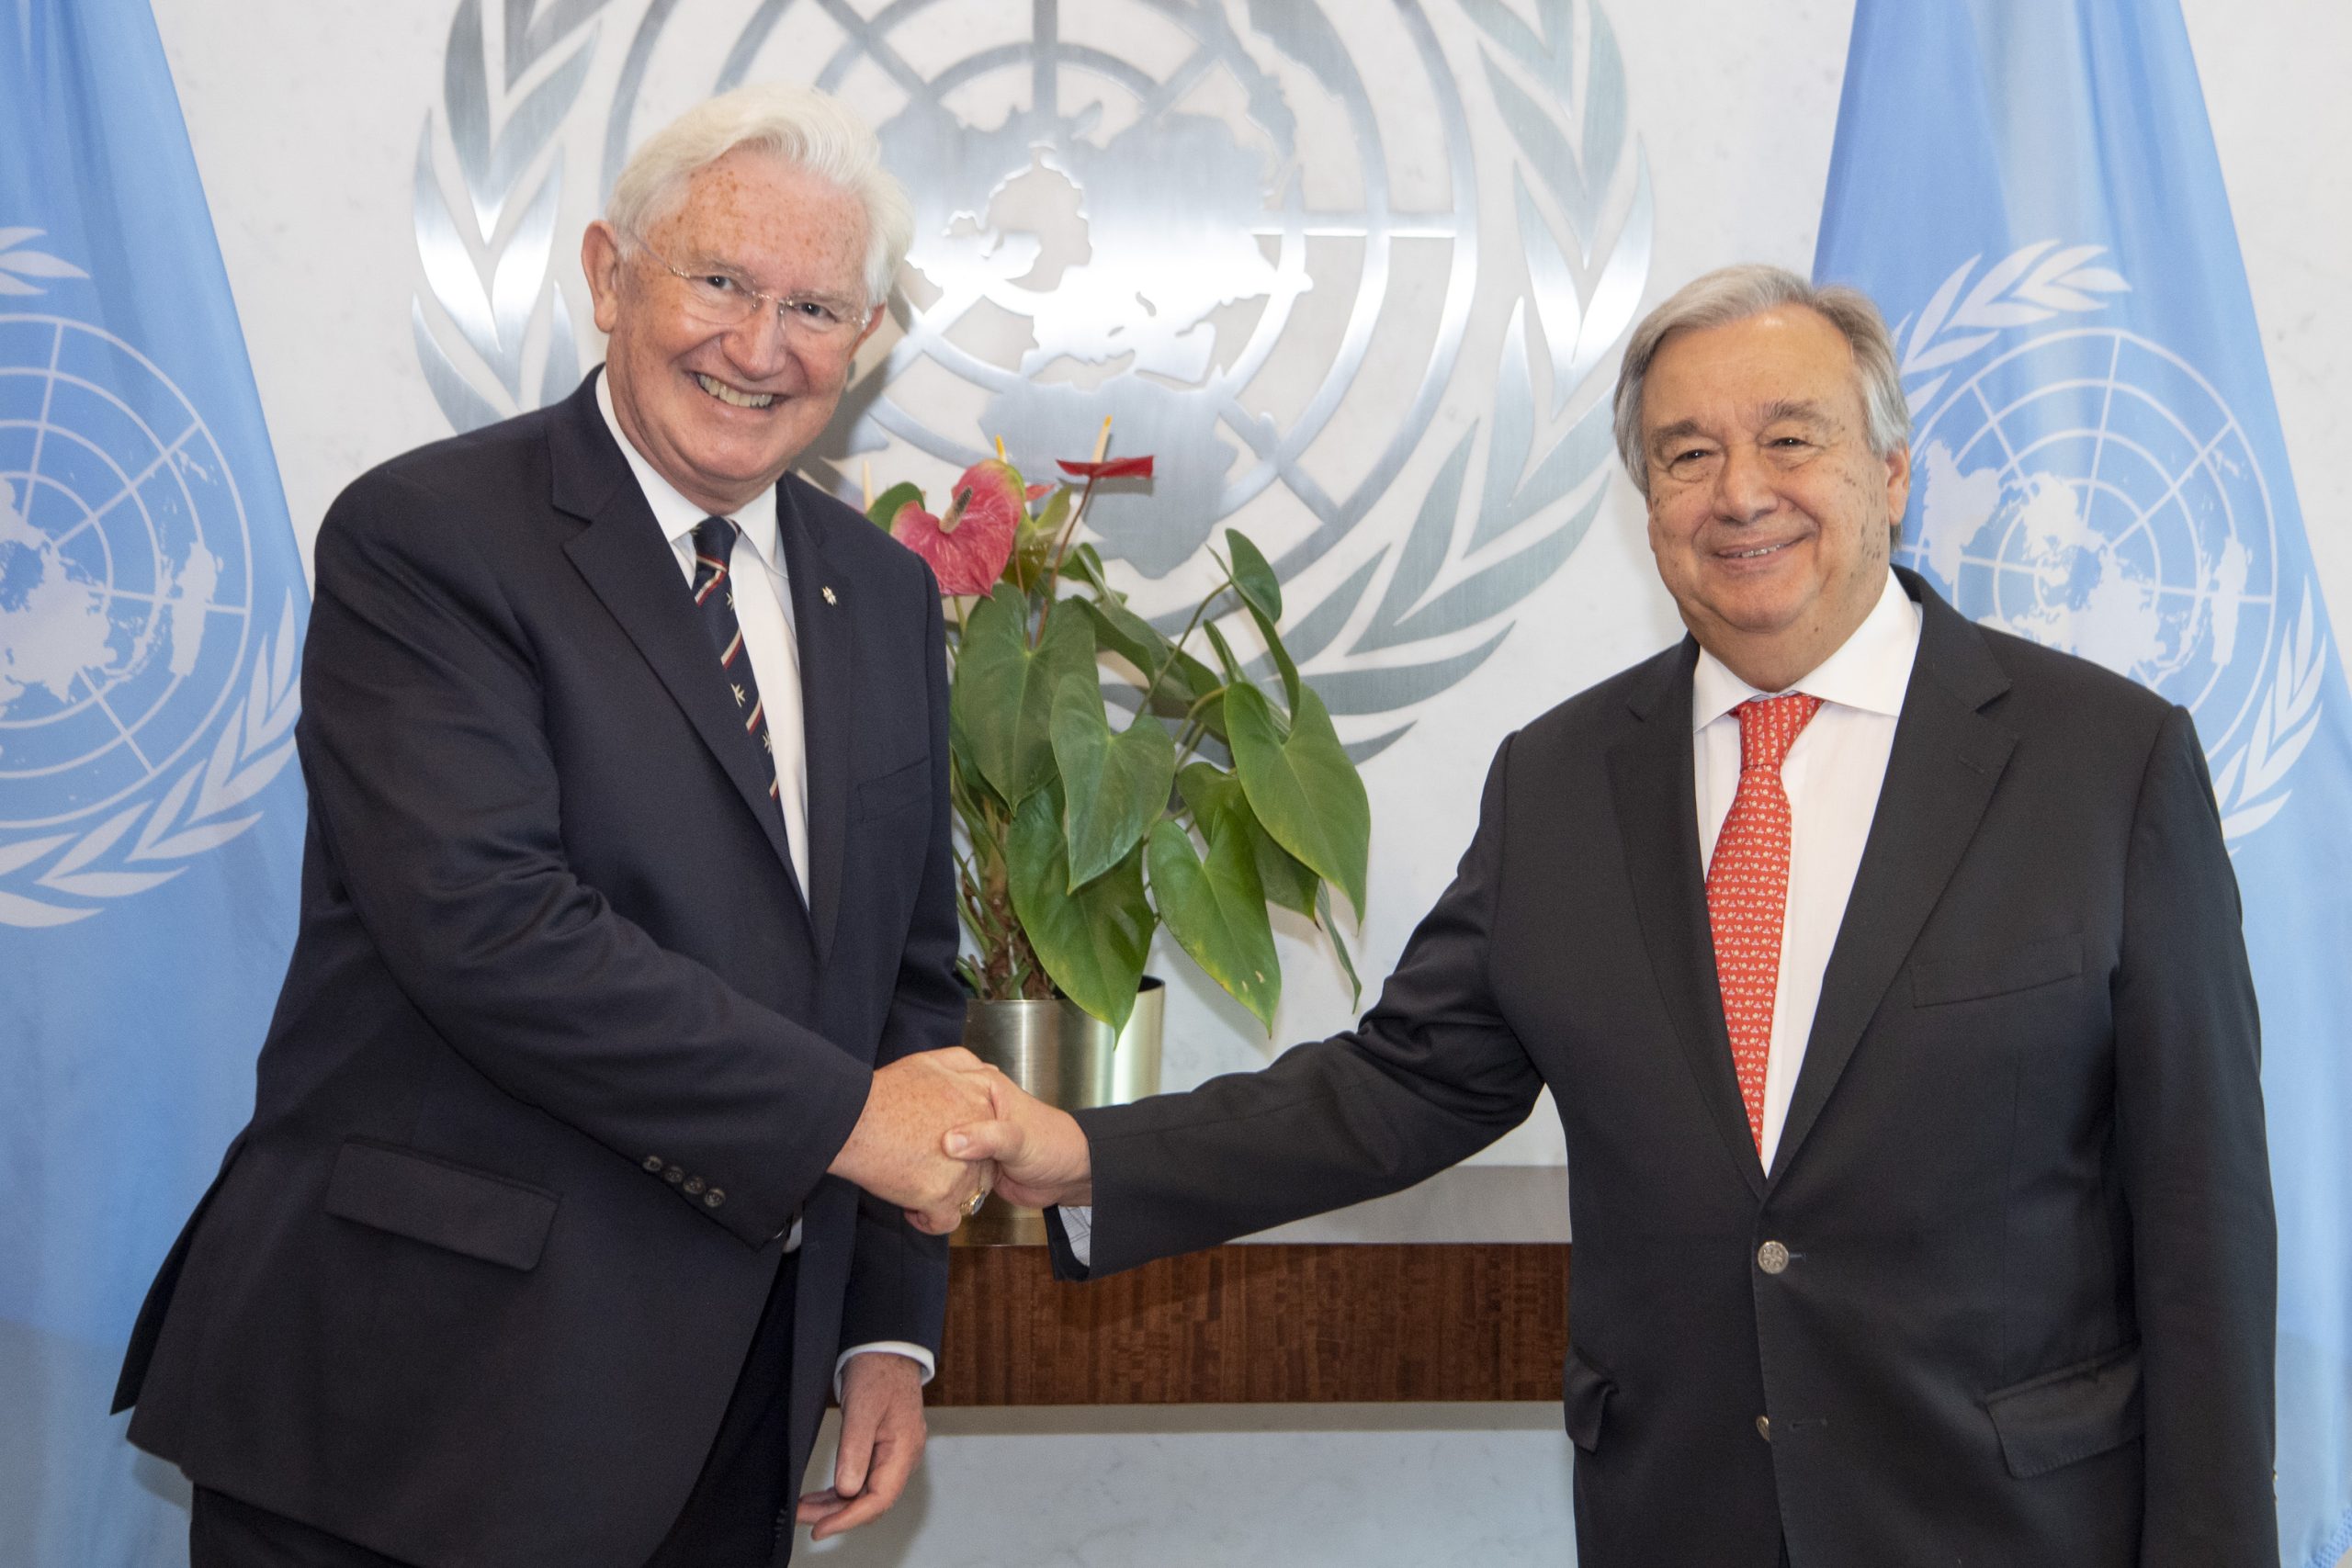 Le nouvel ambassadeur de l’Ordre souverain de Malte auprès des Nations Unies à New York a présenté ses lettres de créance